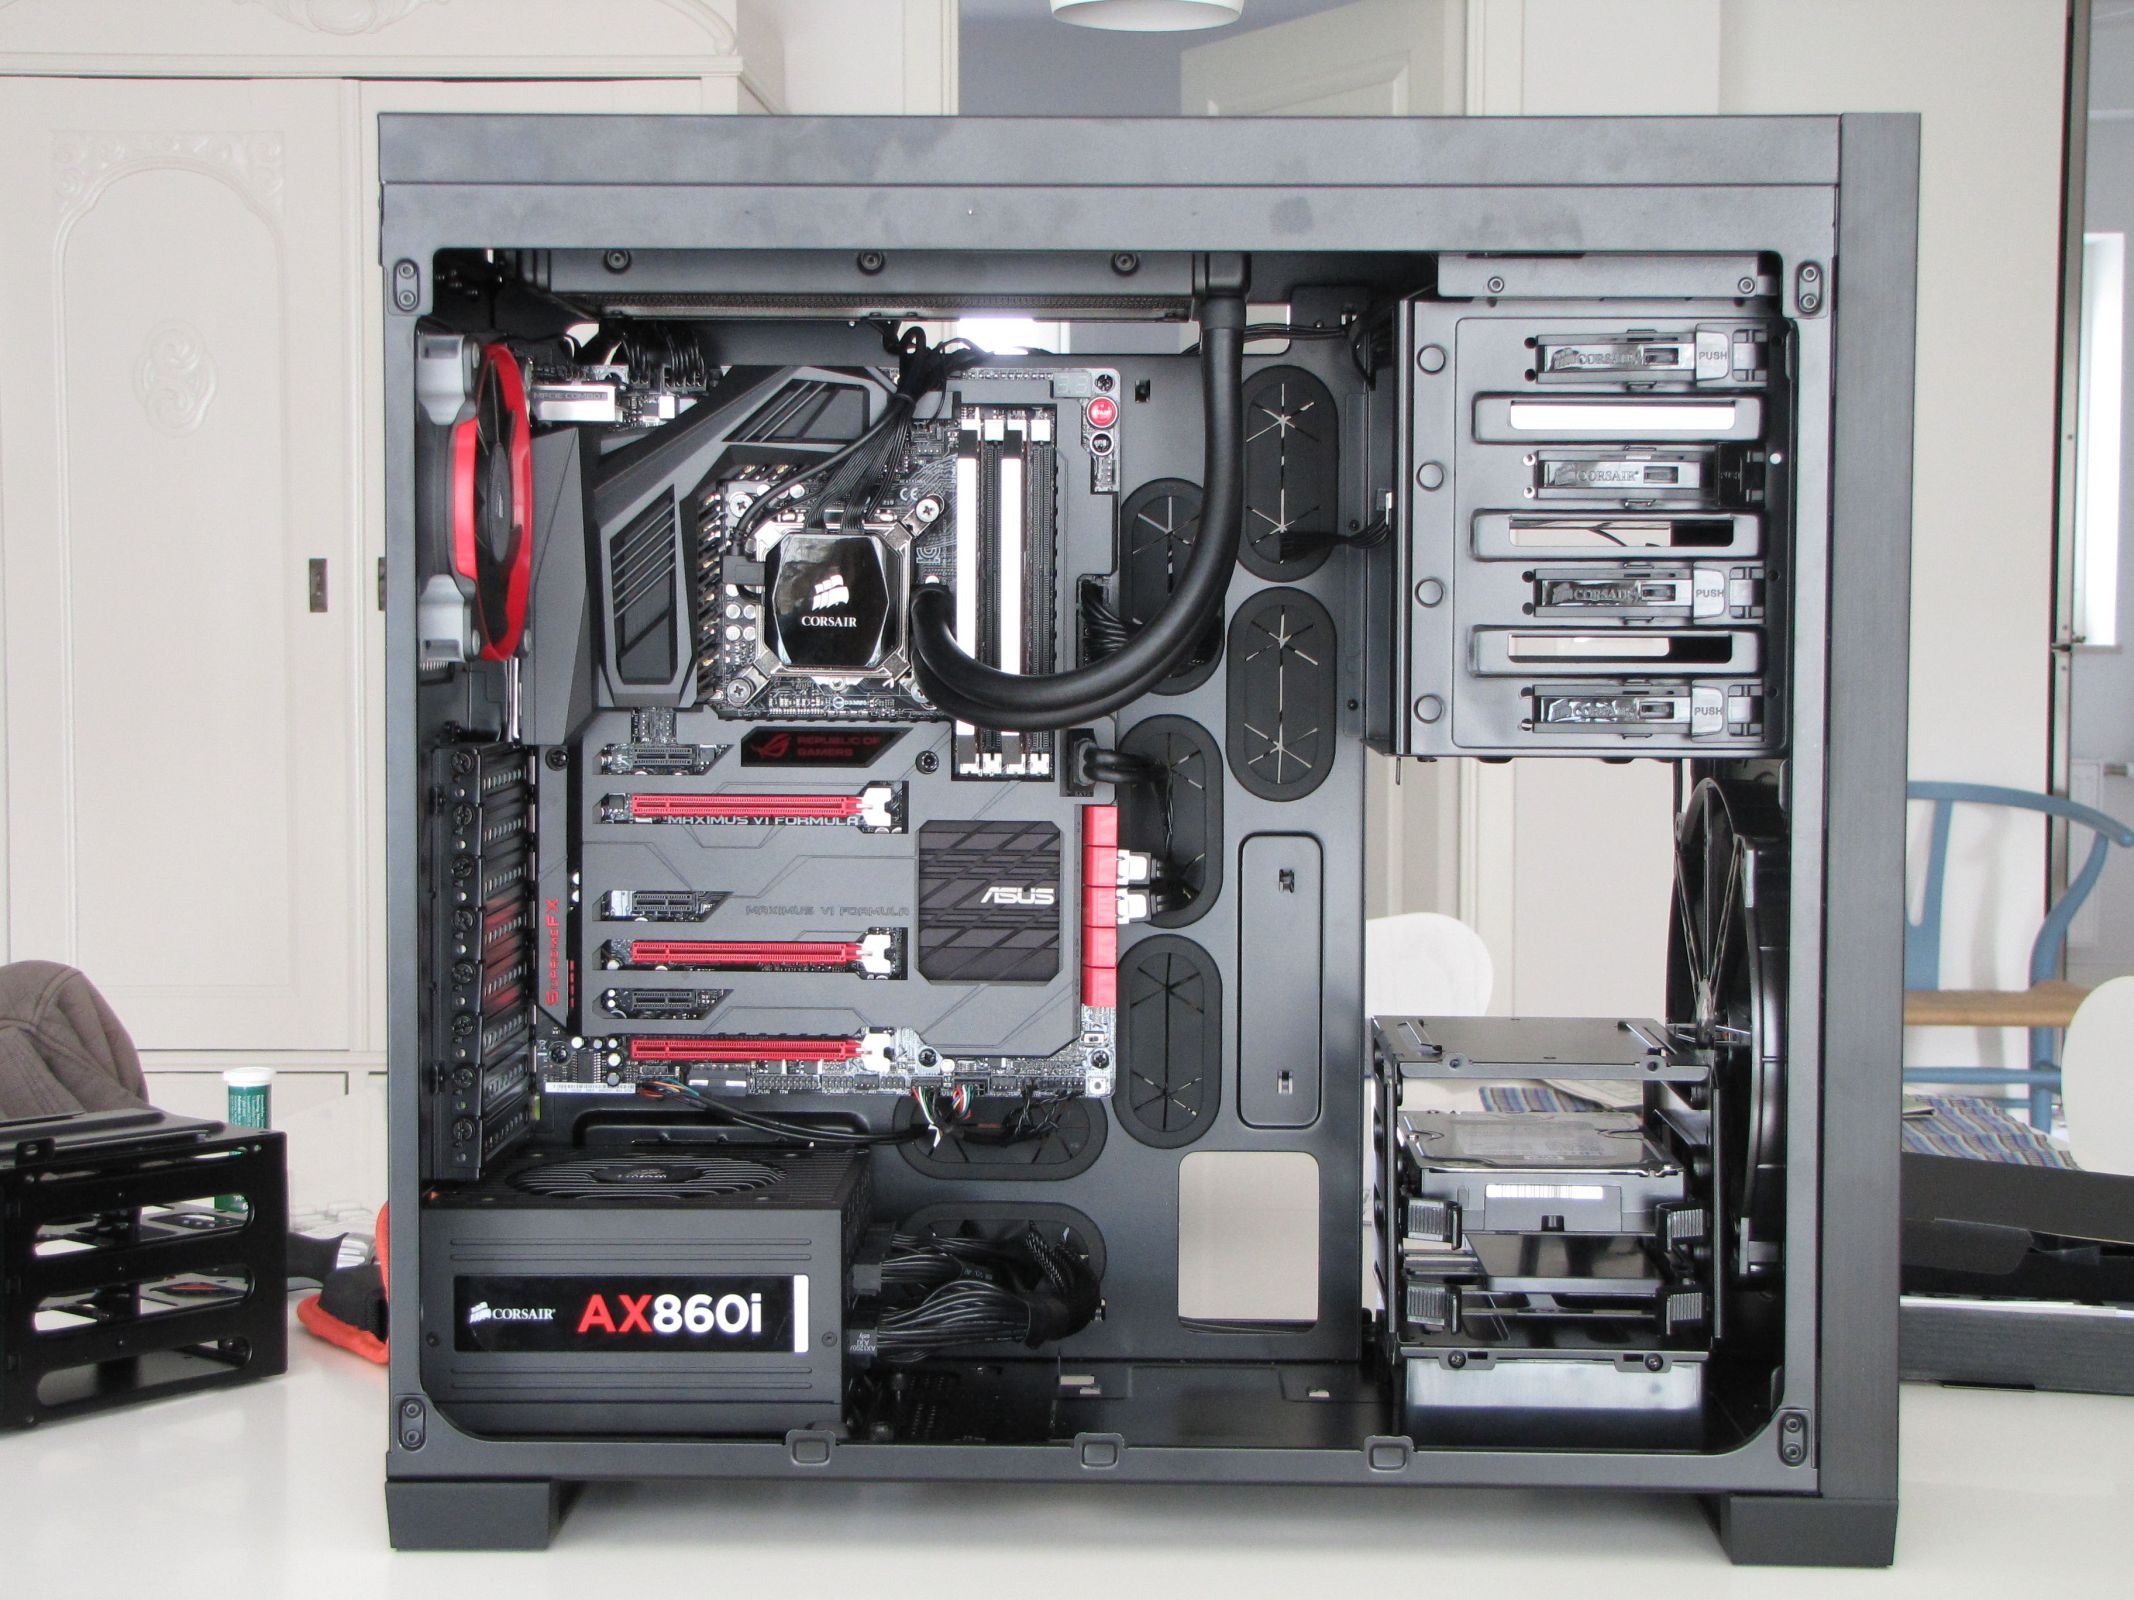 ASUS/Intel/Corsair black and red build